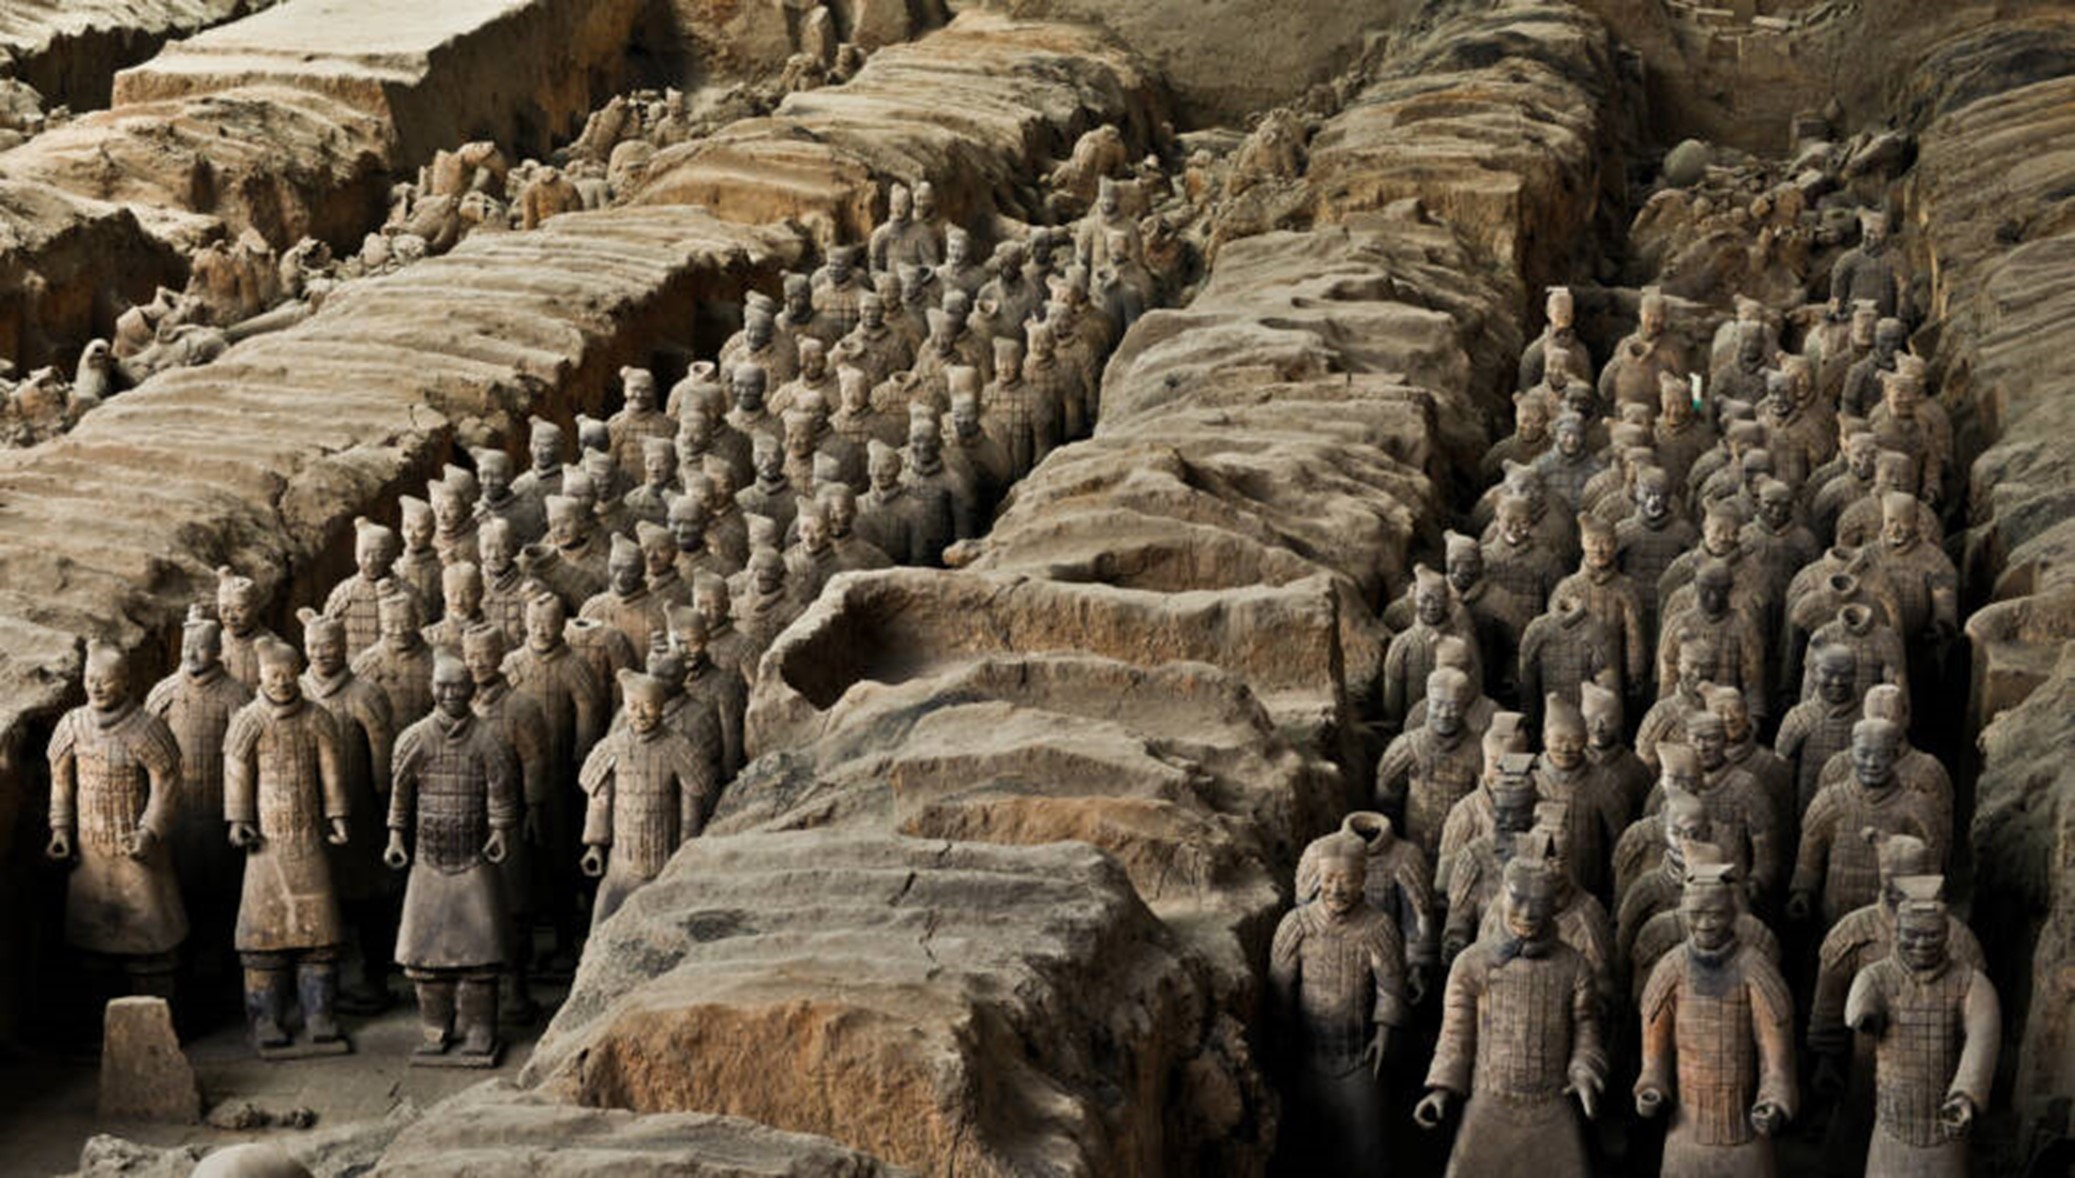 Armata din teracotă a lui Qin Shi Huang număra aproximativ 8.000 de soldați, toți aflați în jurul mormântului său